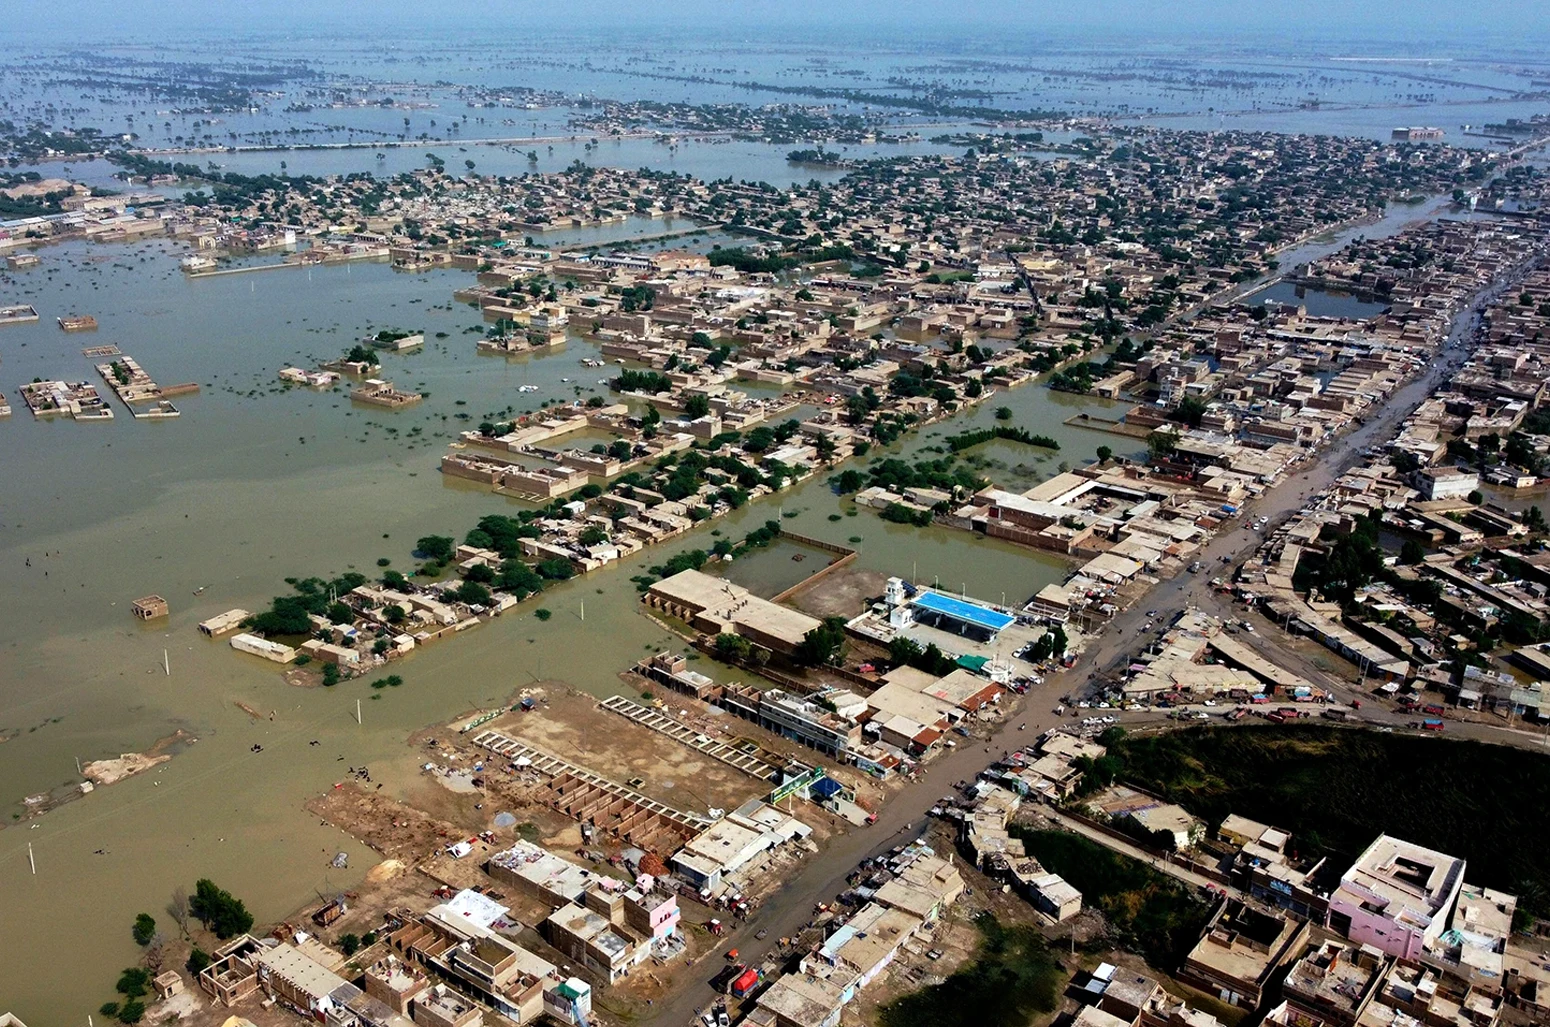 Las casas están rodeadas por inundaciones en la ciudad de Sohbat Pur, un distrito de la provincia de Baluchistán, en el suroeste de Pakistán, el 30 de agosto de 2022.